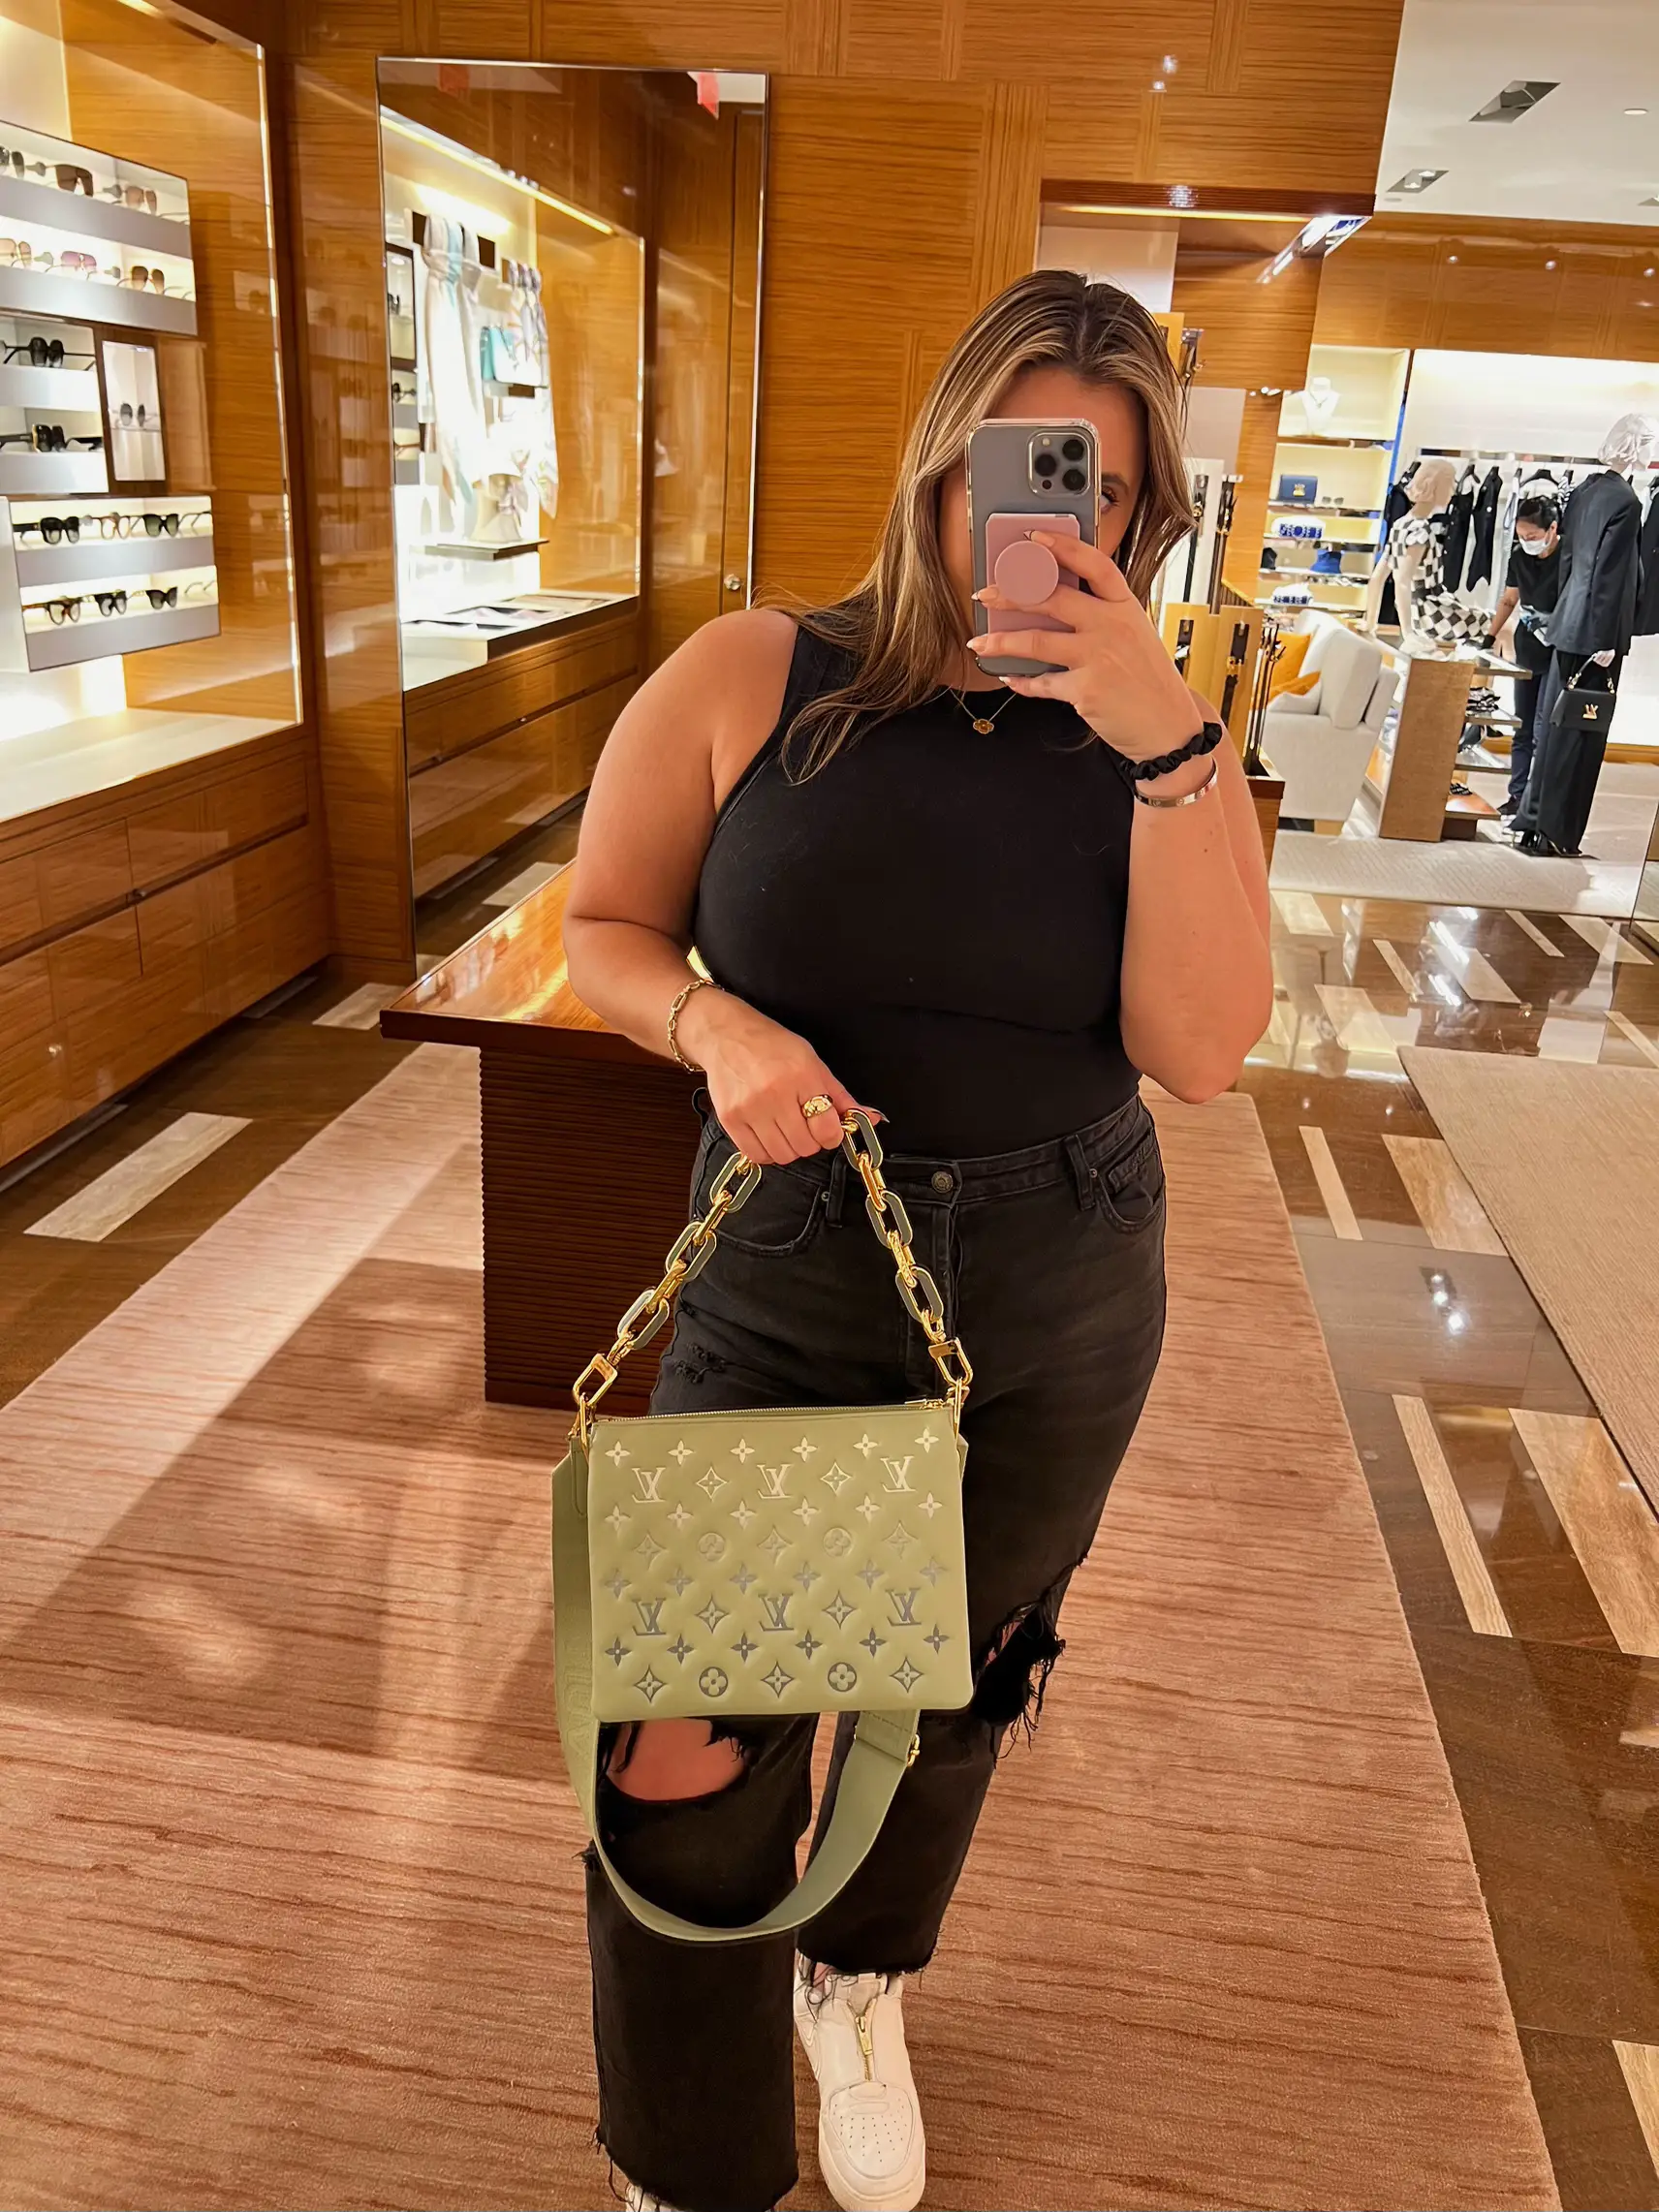 Louis Vuitton Pochette Coussin #LV #louisvuitton  Luxury bags collection, Louis  vuitton store, Bags